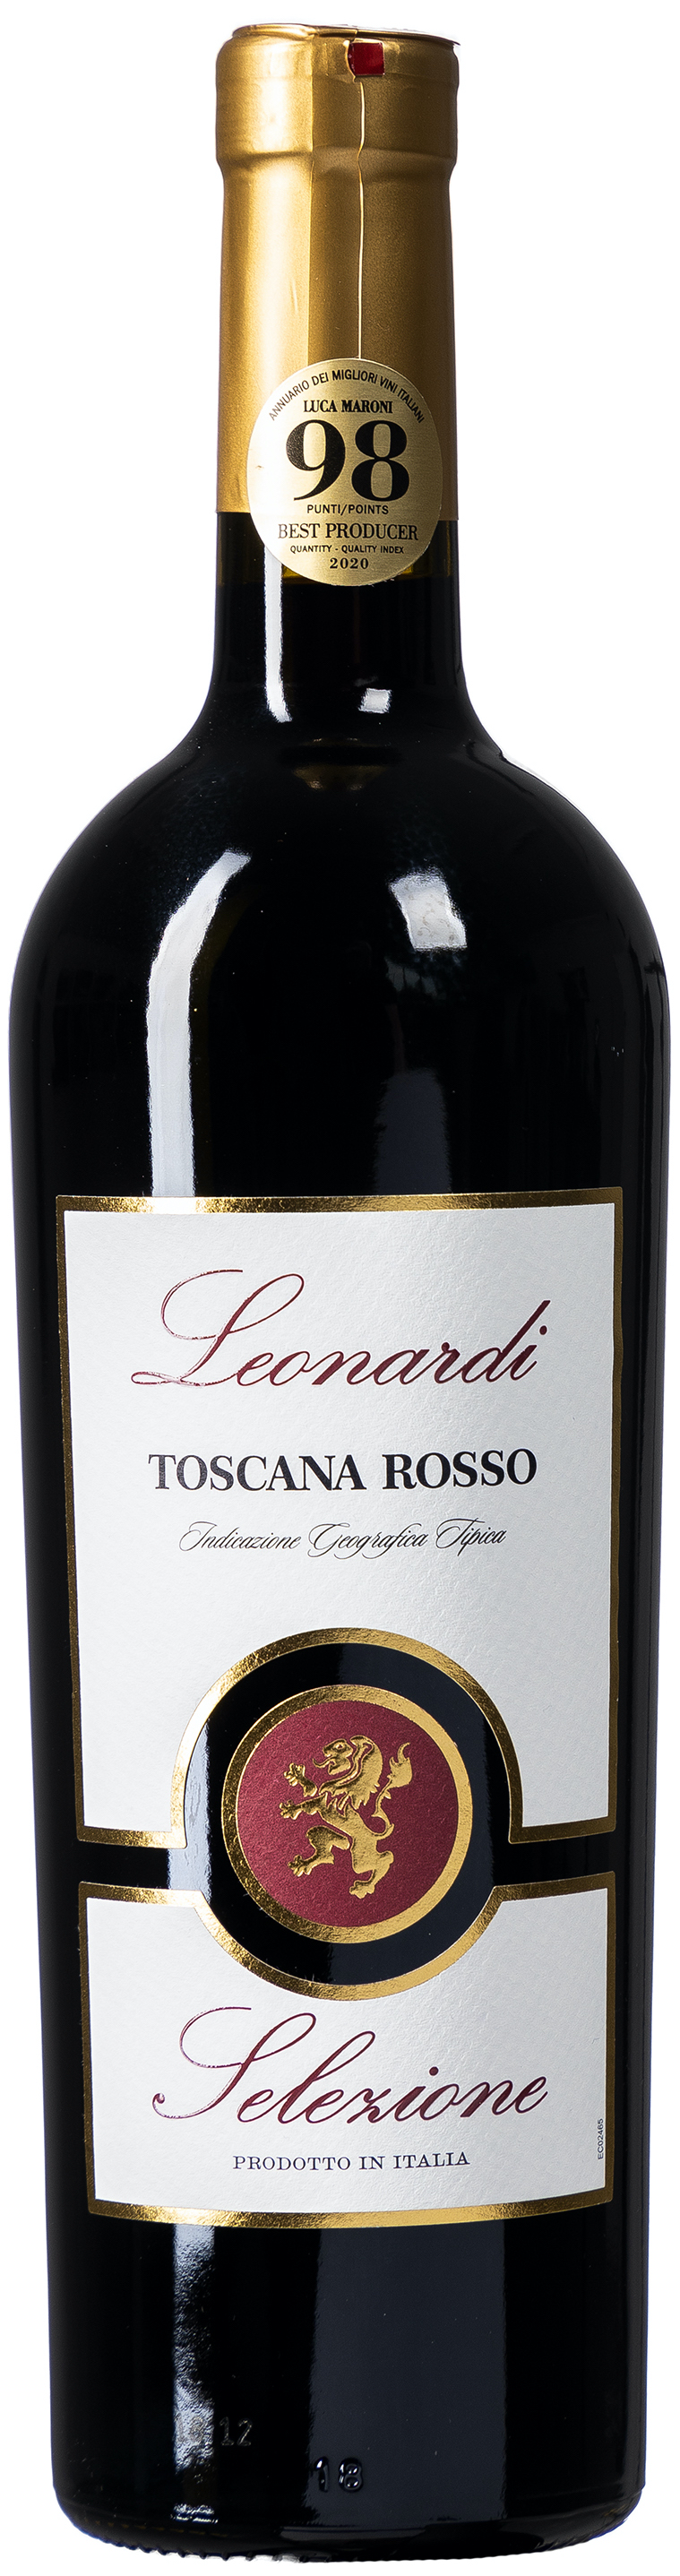 Leonardi Selezione Toscana Rosso 14%vol. 0,75L